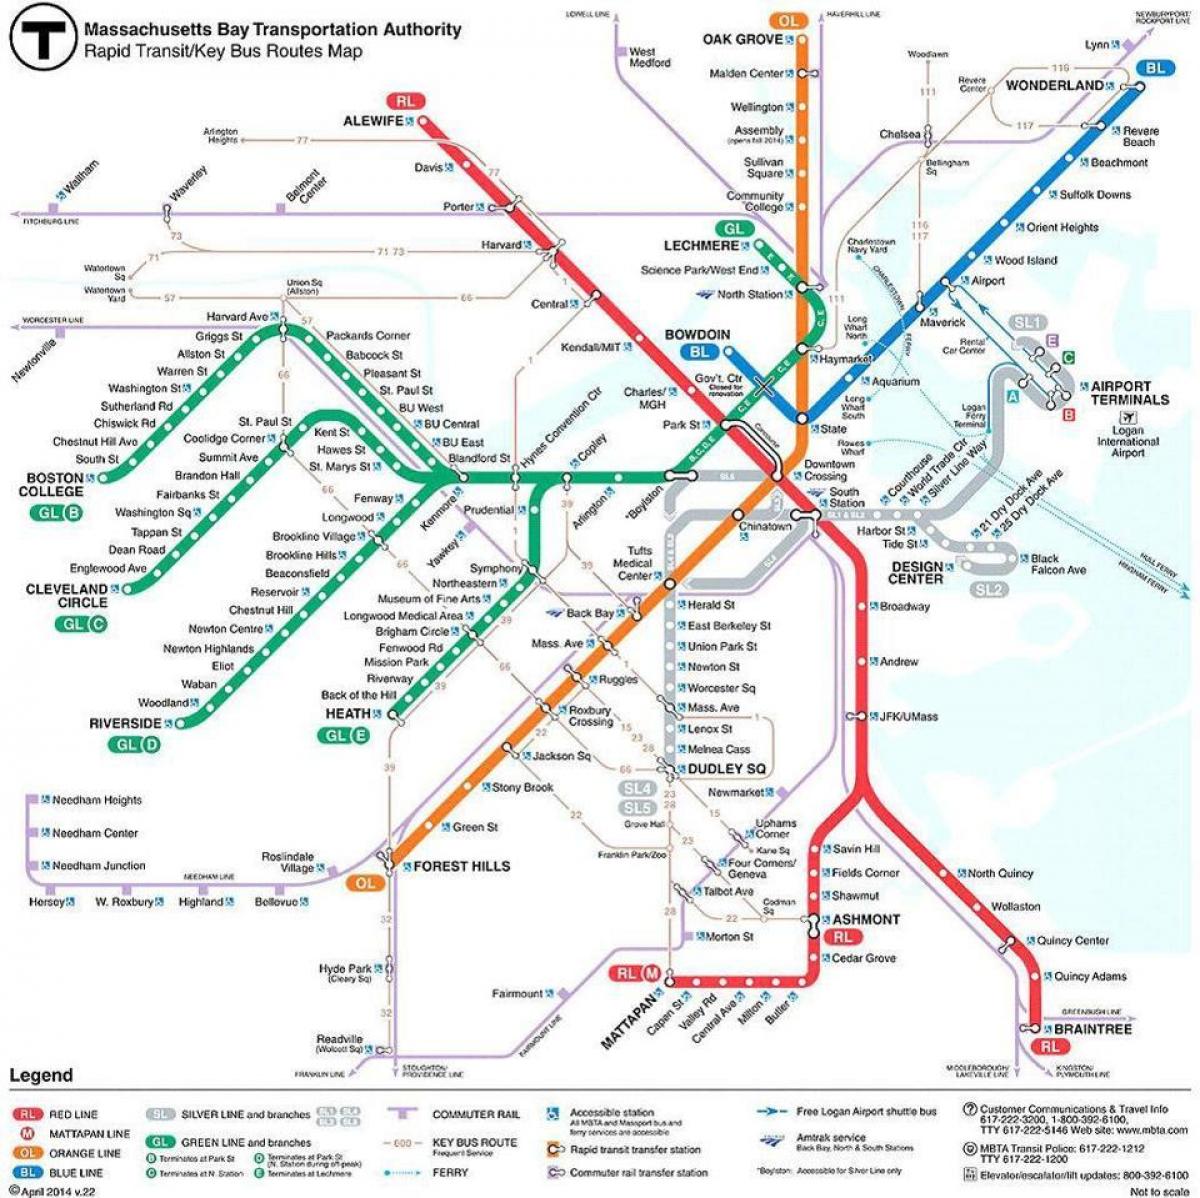 kort over MBTA